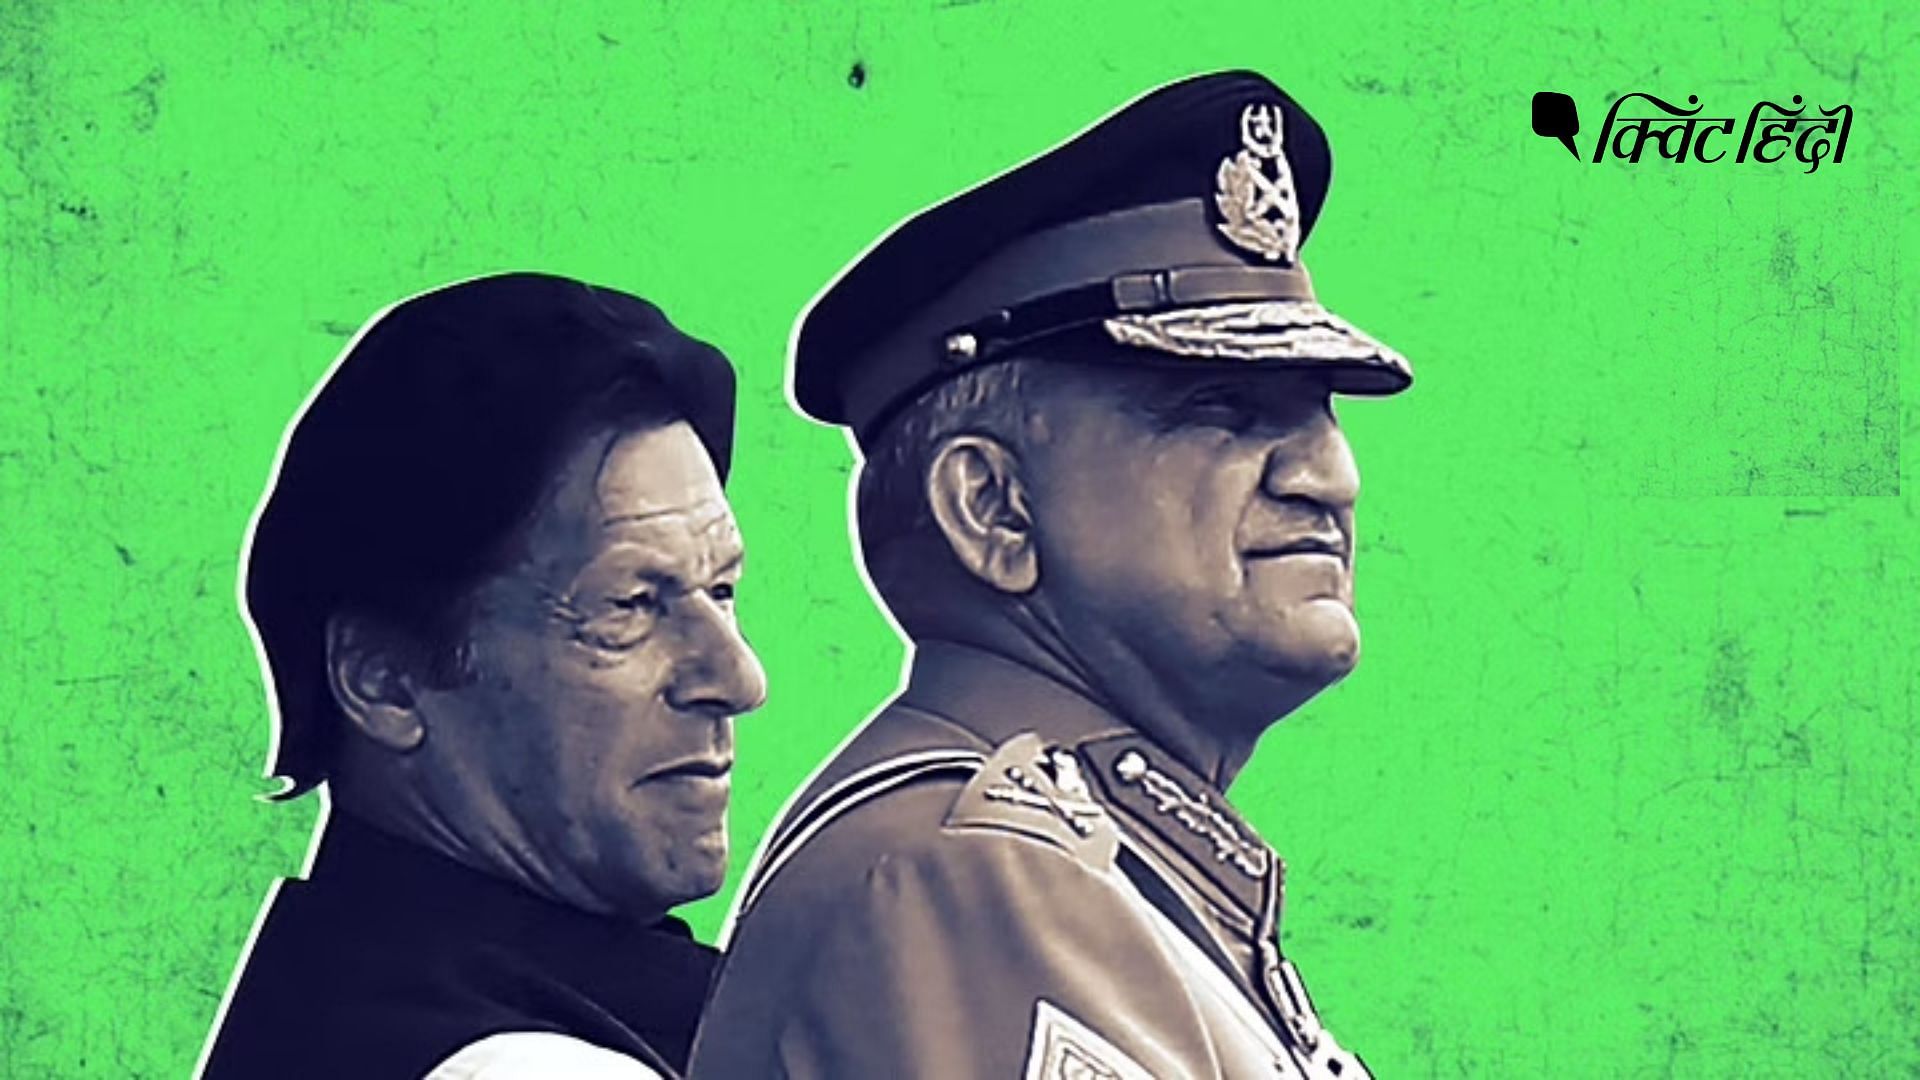 <div class="paragraphs"><p>सियासी संकट के बीच पाकिस्तान के नए सेना चीफ भारत के लिए बेहतर नीति बना पाएंगे?</p></div>